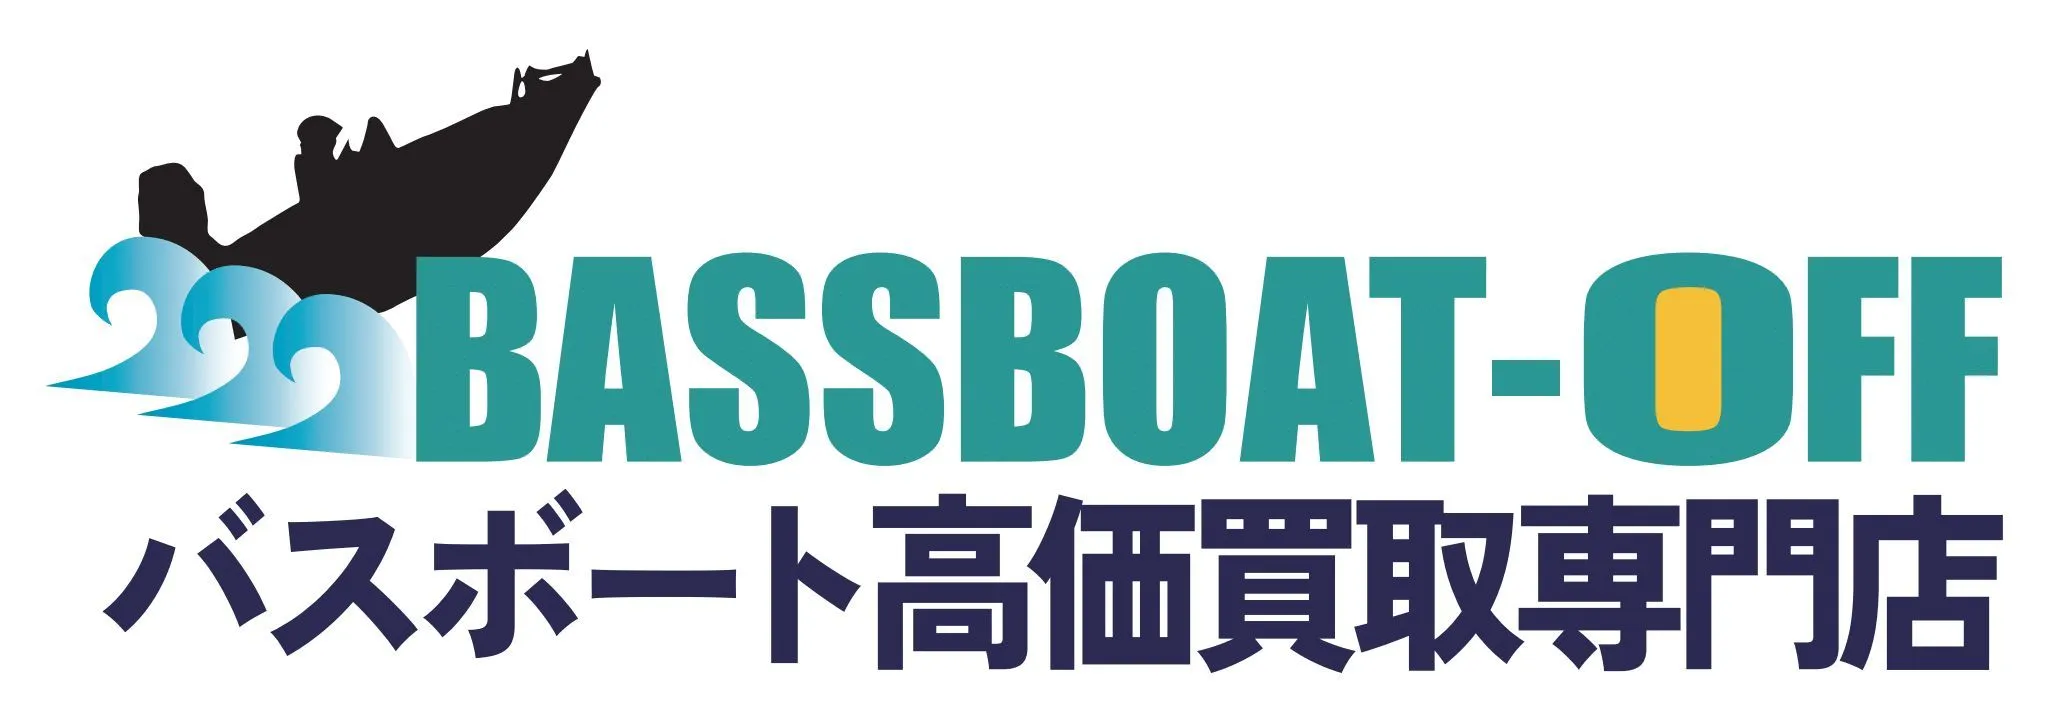 BASSCAT(バスキャット)ボート一覧|bassboat-off.com